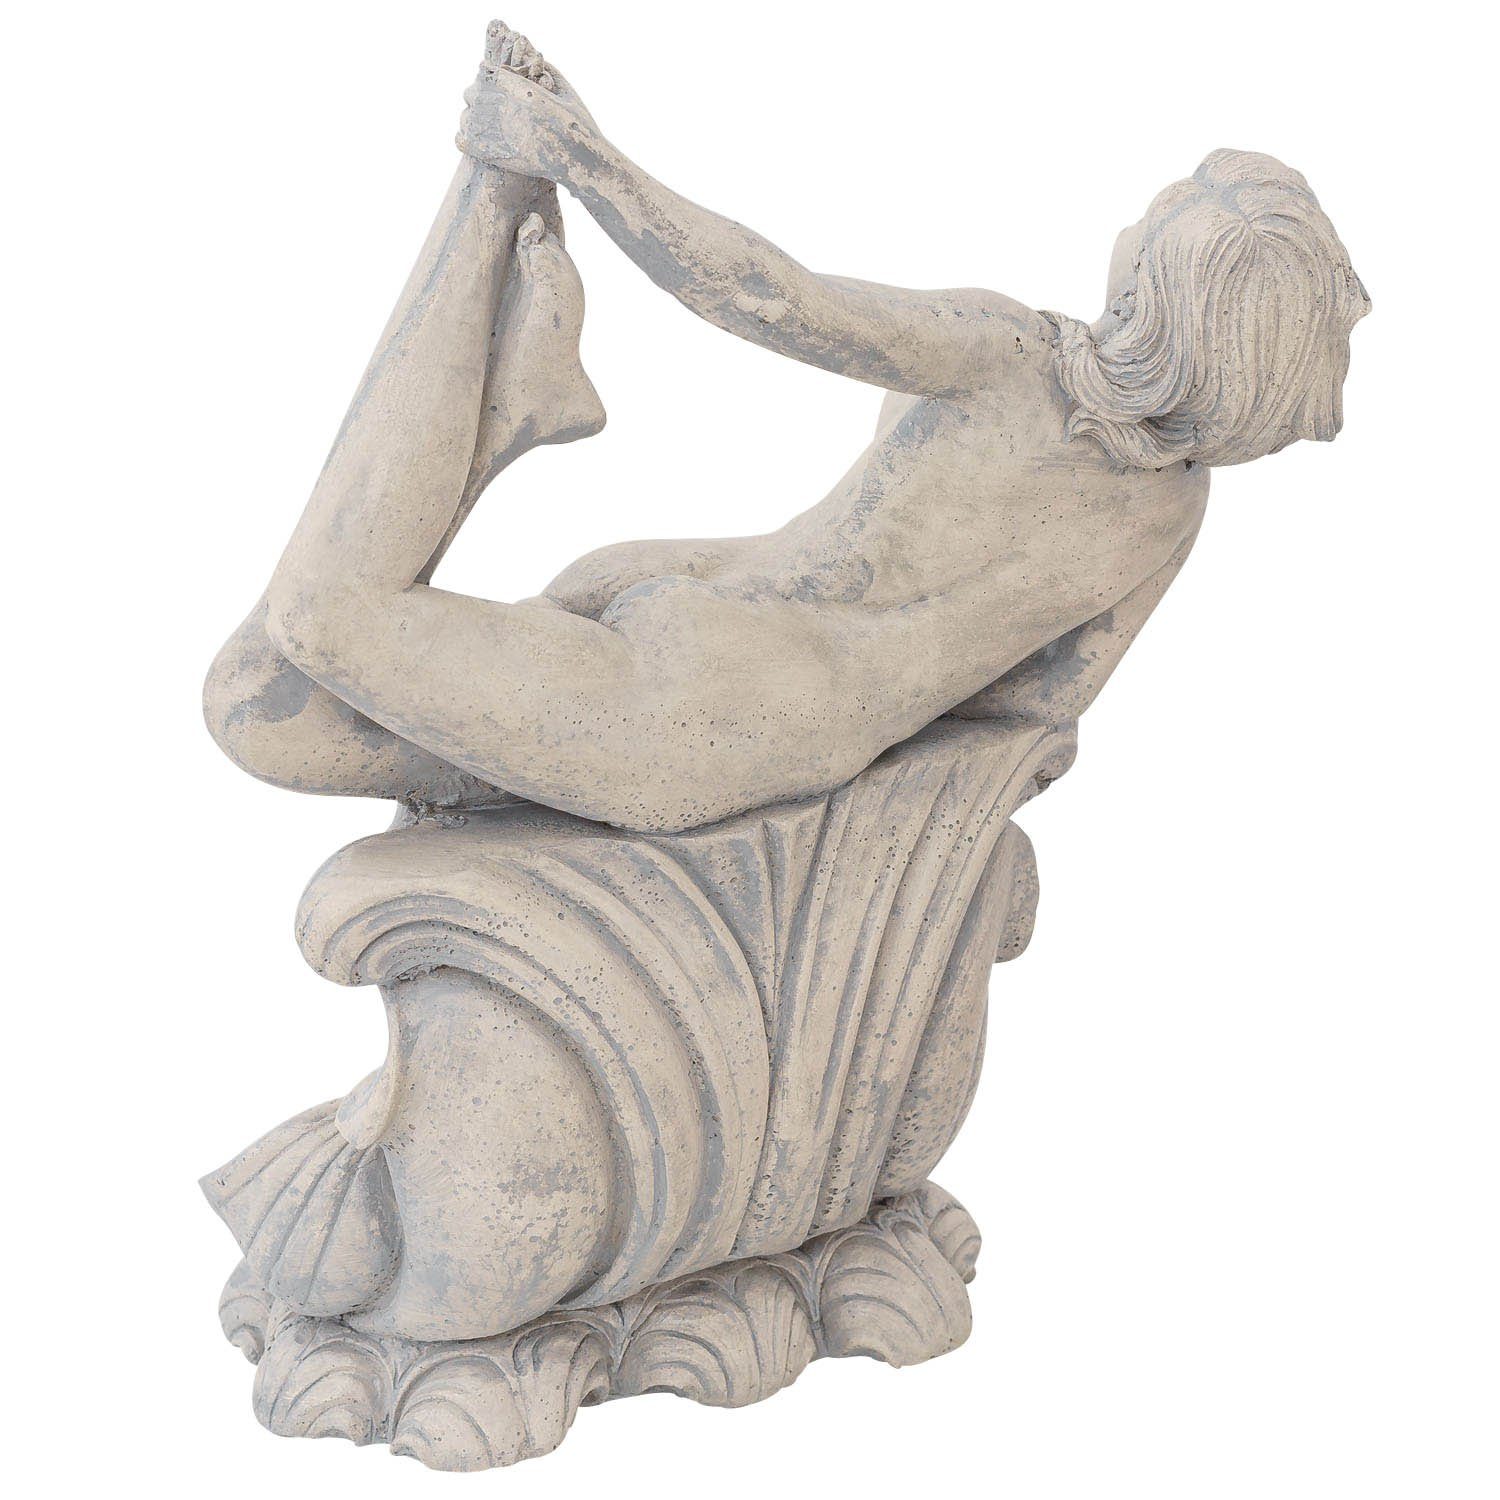 Skulptur Erotika massiver Antik-Stil Kunststein Deko Frau Aubaho Figur Statue Gartenfigur